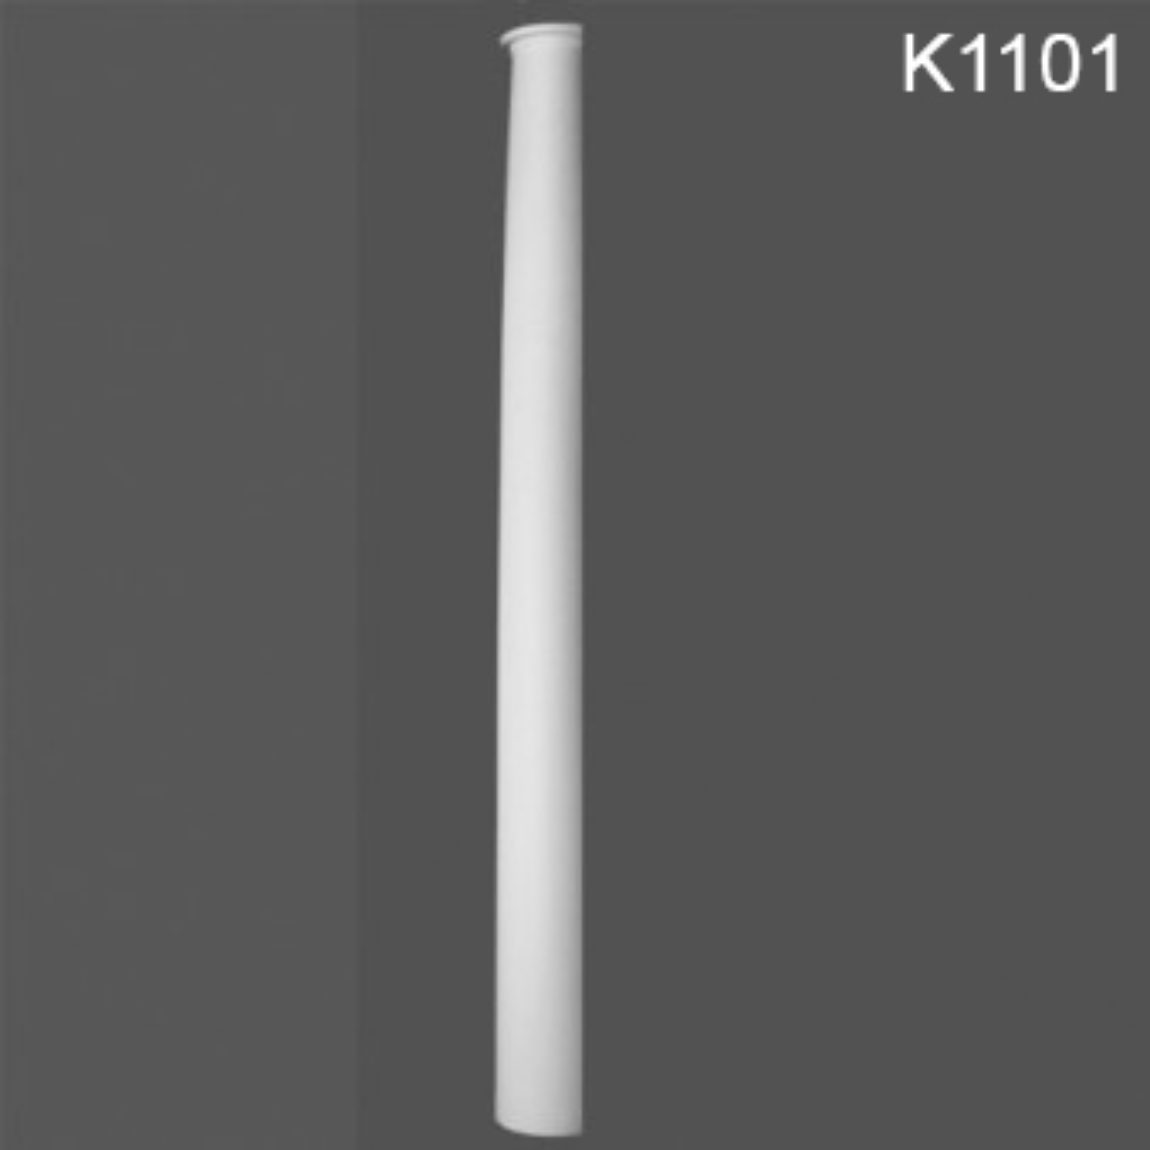 K1101